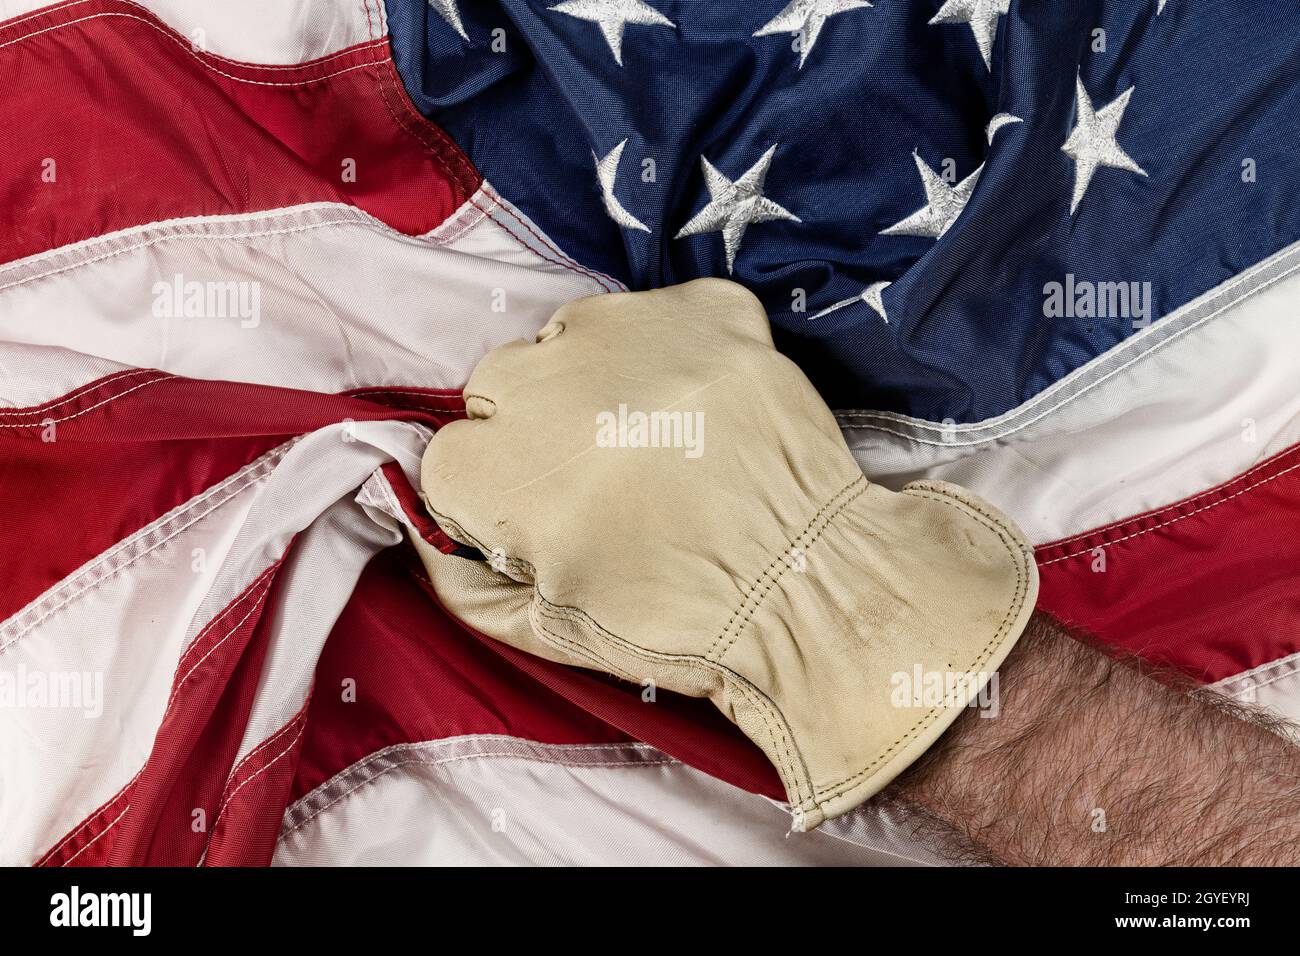 Un hombre que lleva guantes de cuero agarró la bandera americana en frustración y cólera mientras que la política del gobierno mueve los trabajos del cuello azul en el extranjero. Foto de stock